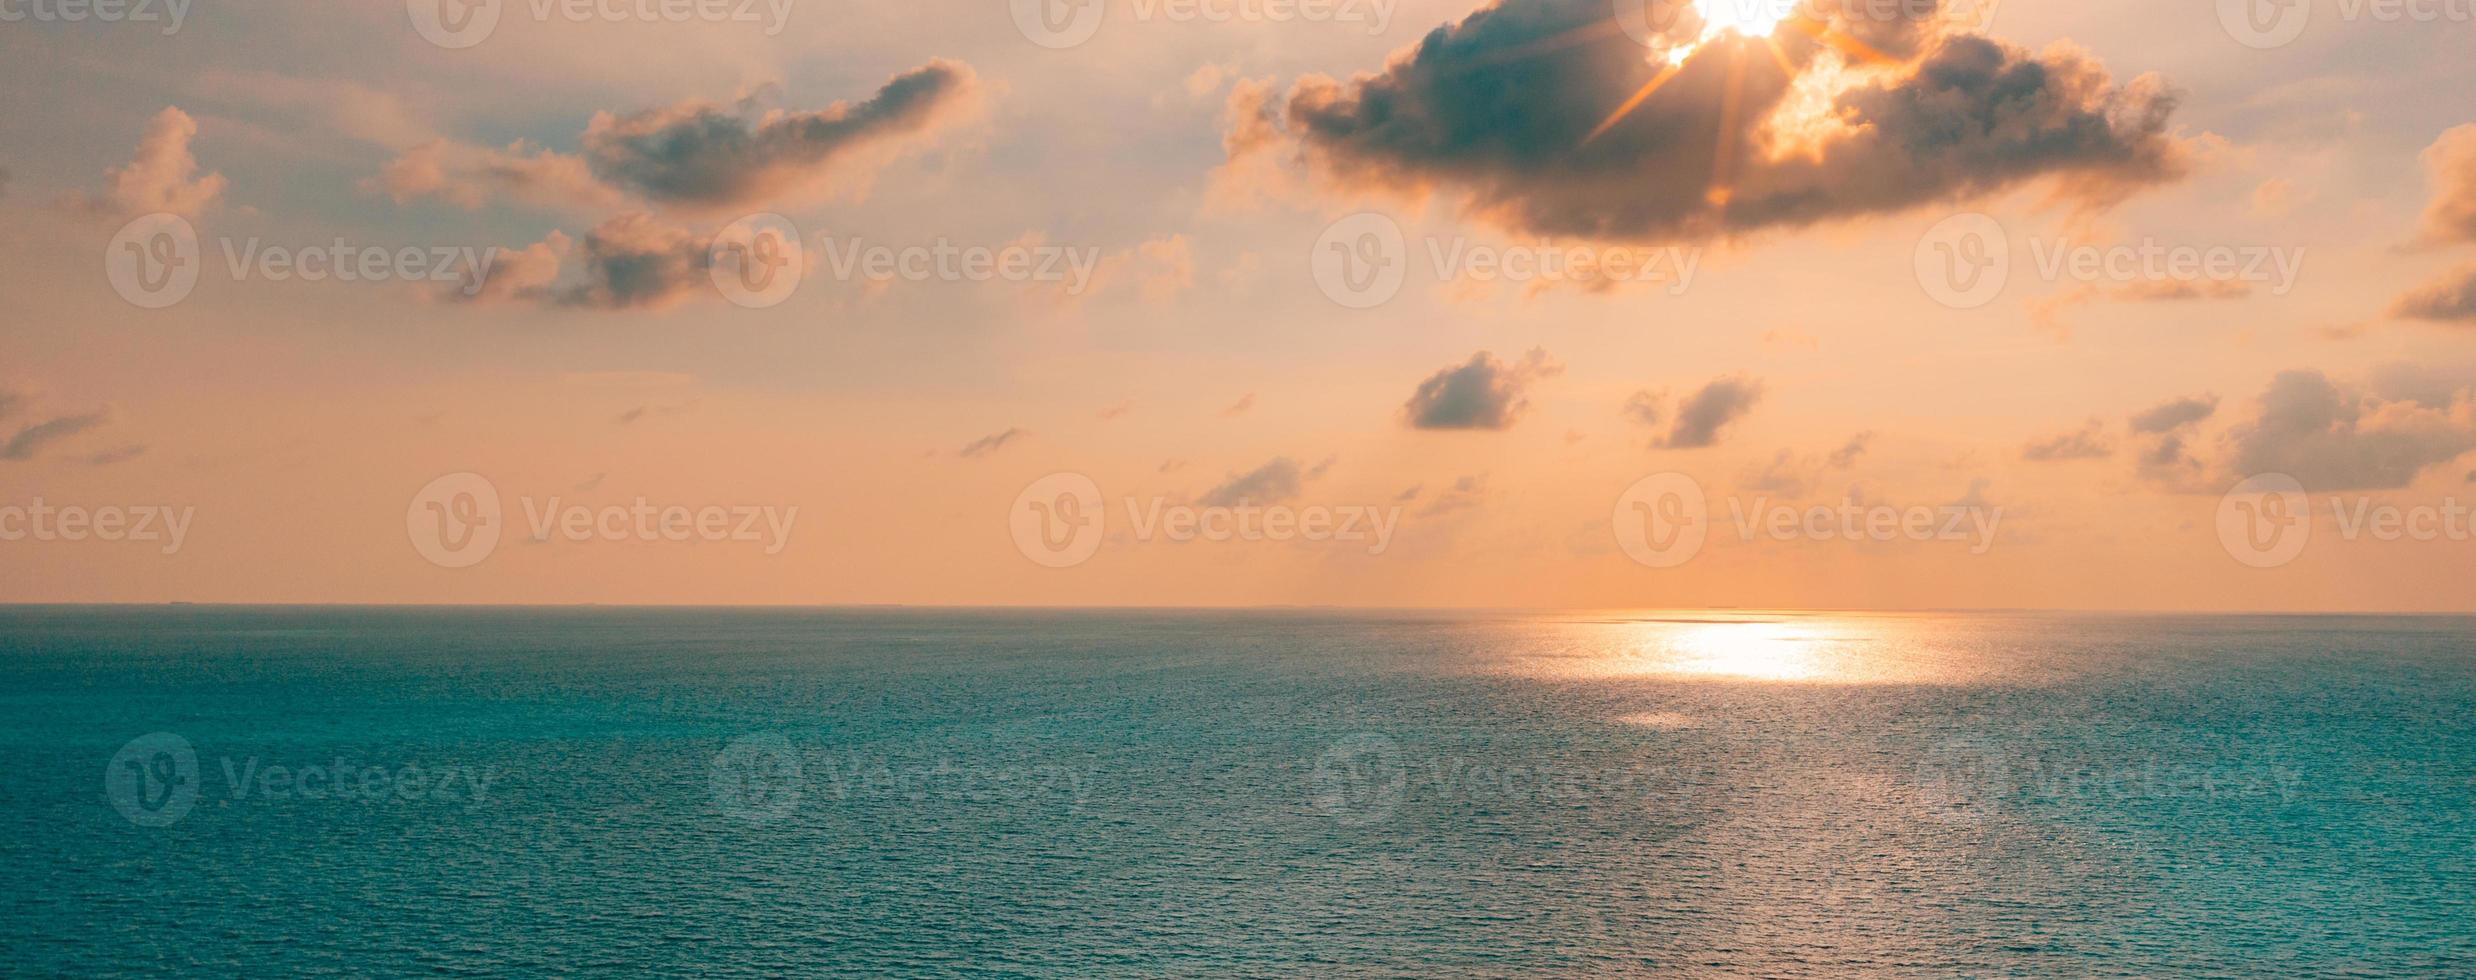 Flygfoto panoramautsikt över solnedgången över havet. färgglad himmel, moln och vatten. fantastiskt fridfullt naturskönt foto